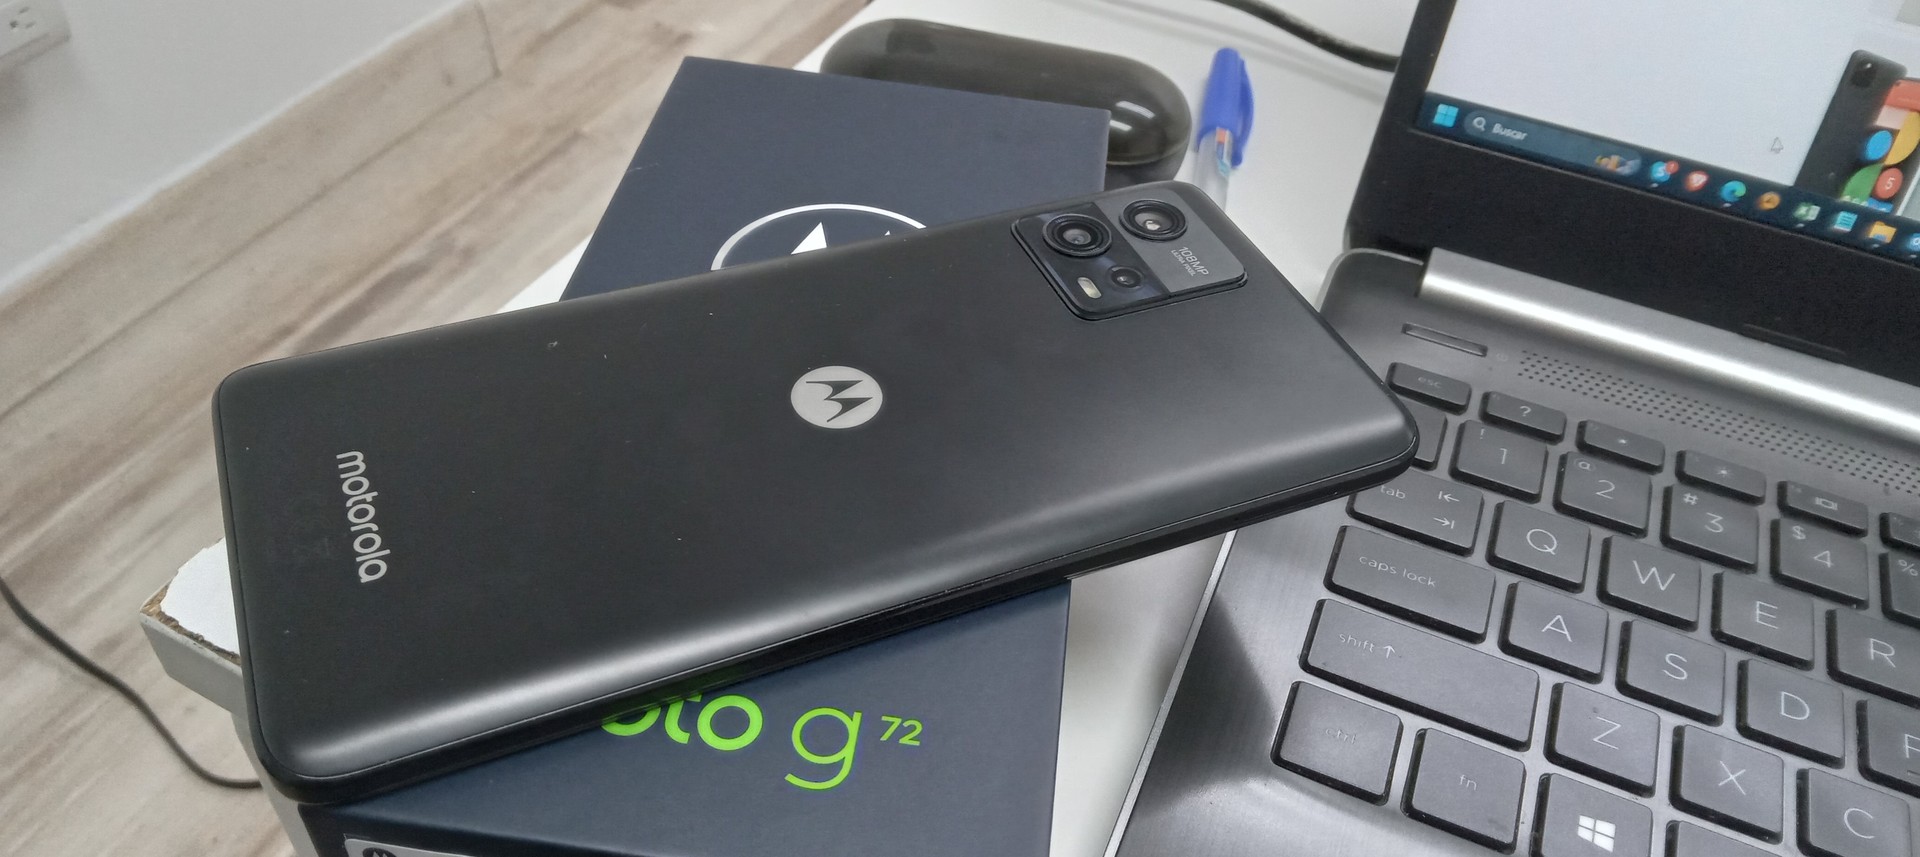 celulares y tabletas - Motorola g72 nuevo exclusivo de claro 128gb 